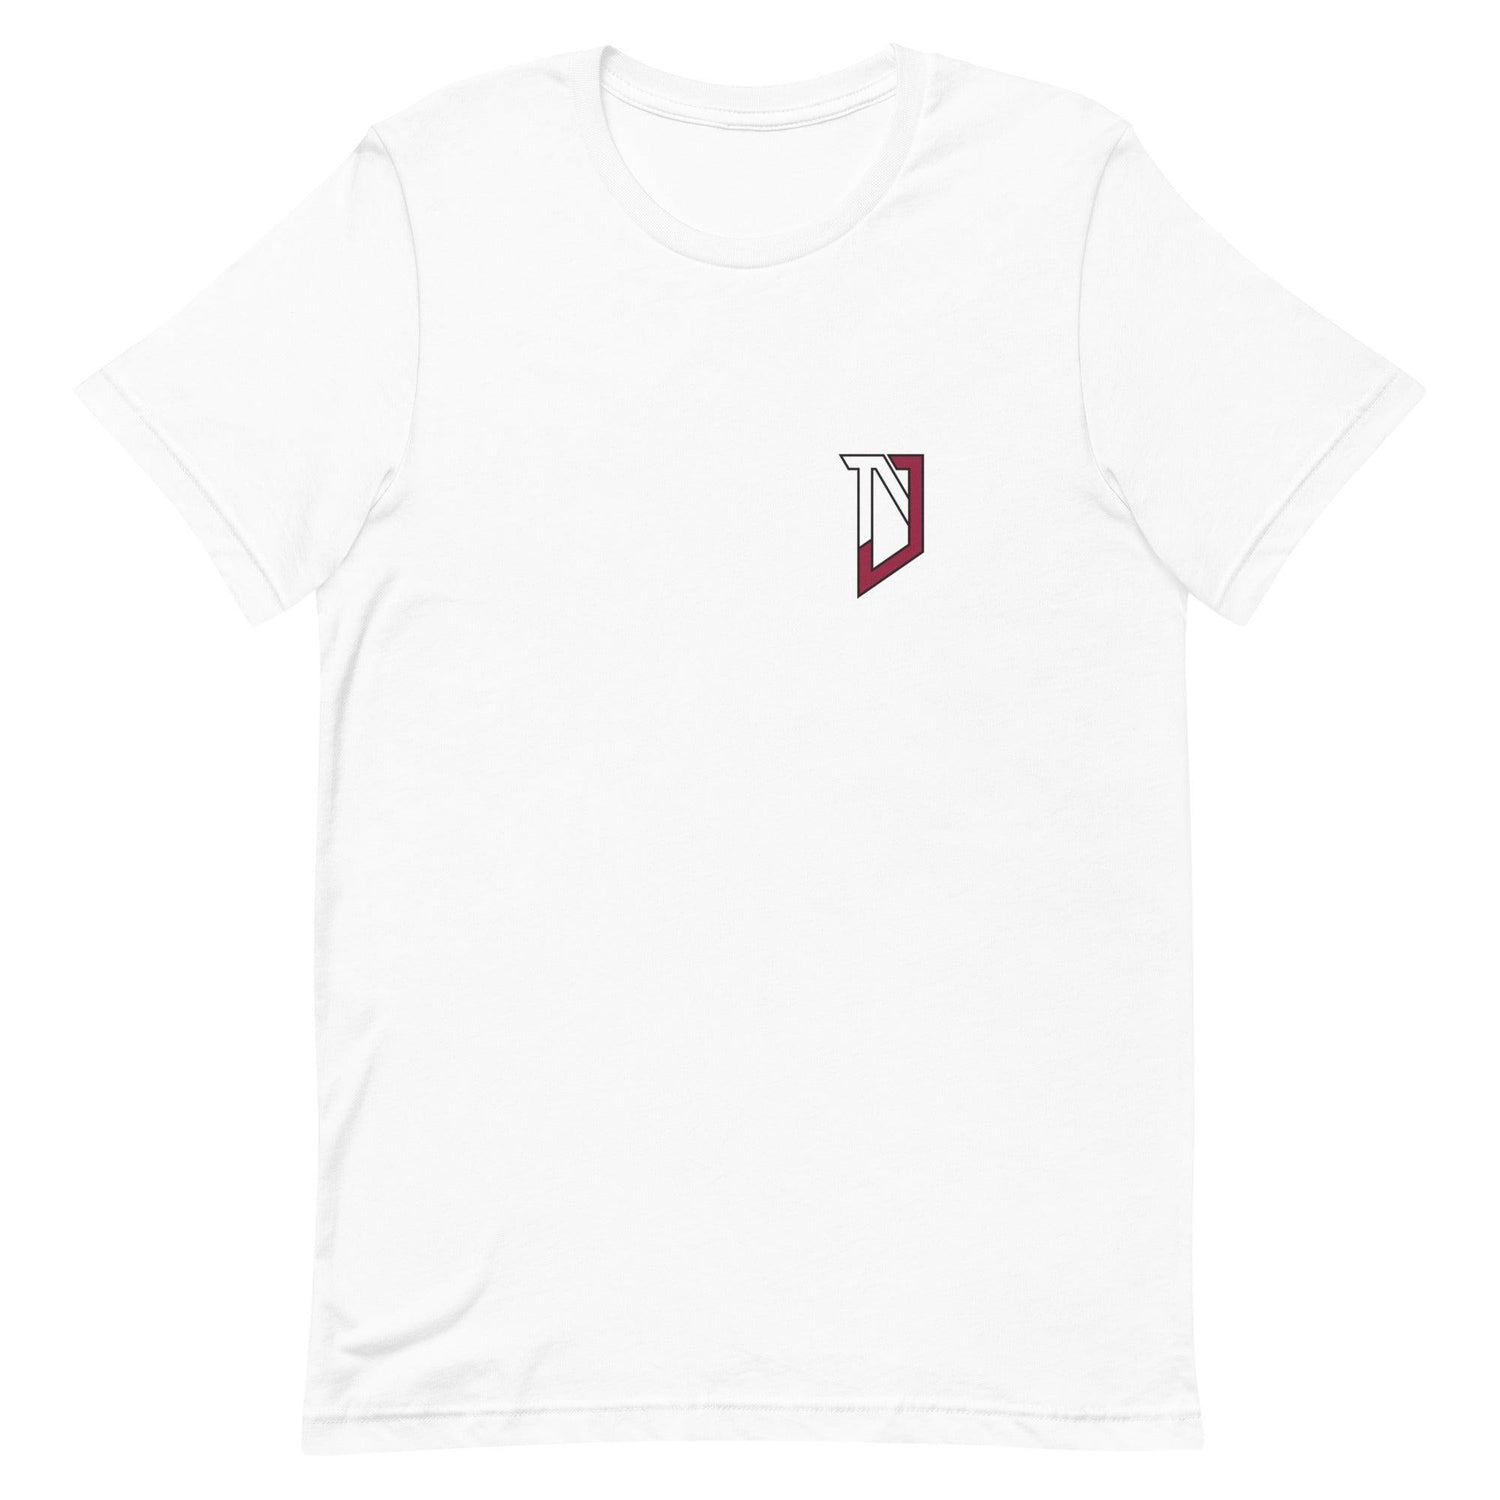 Nic Jones "NJ" t-shirt - Fan Arch